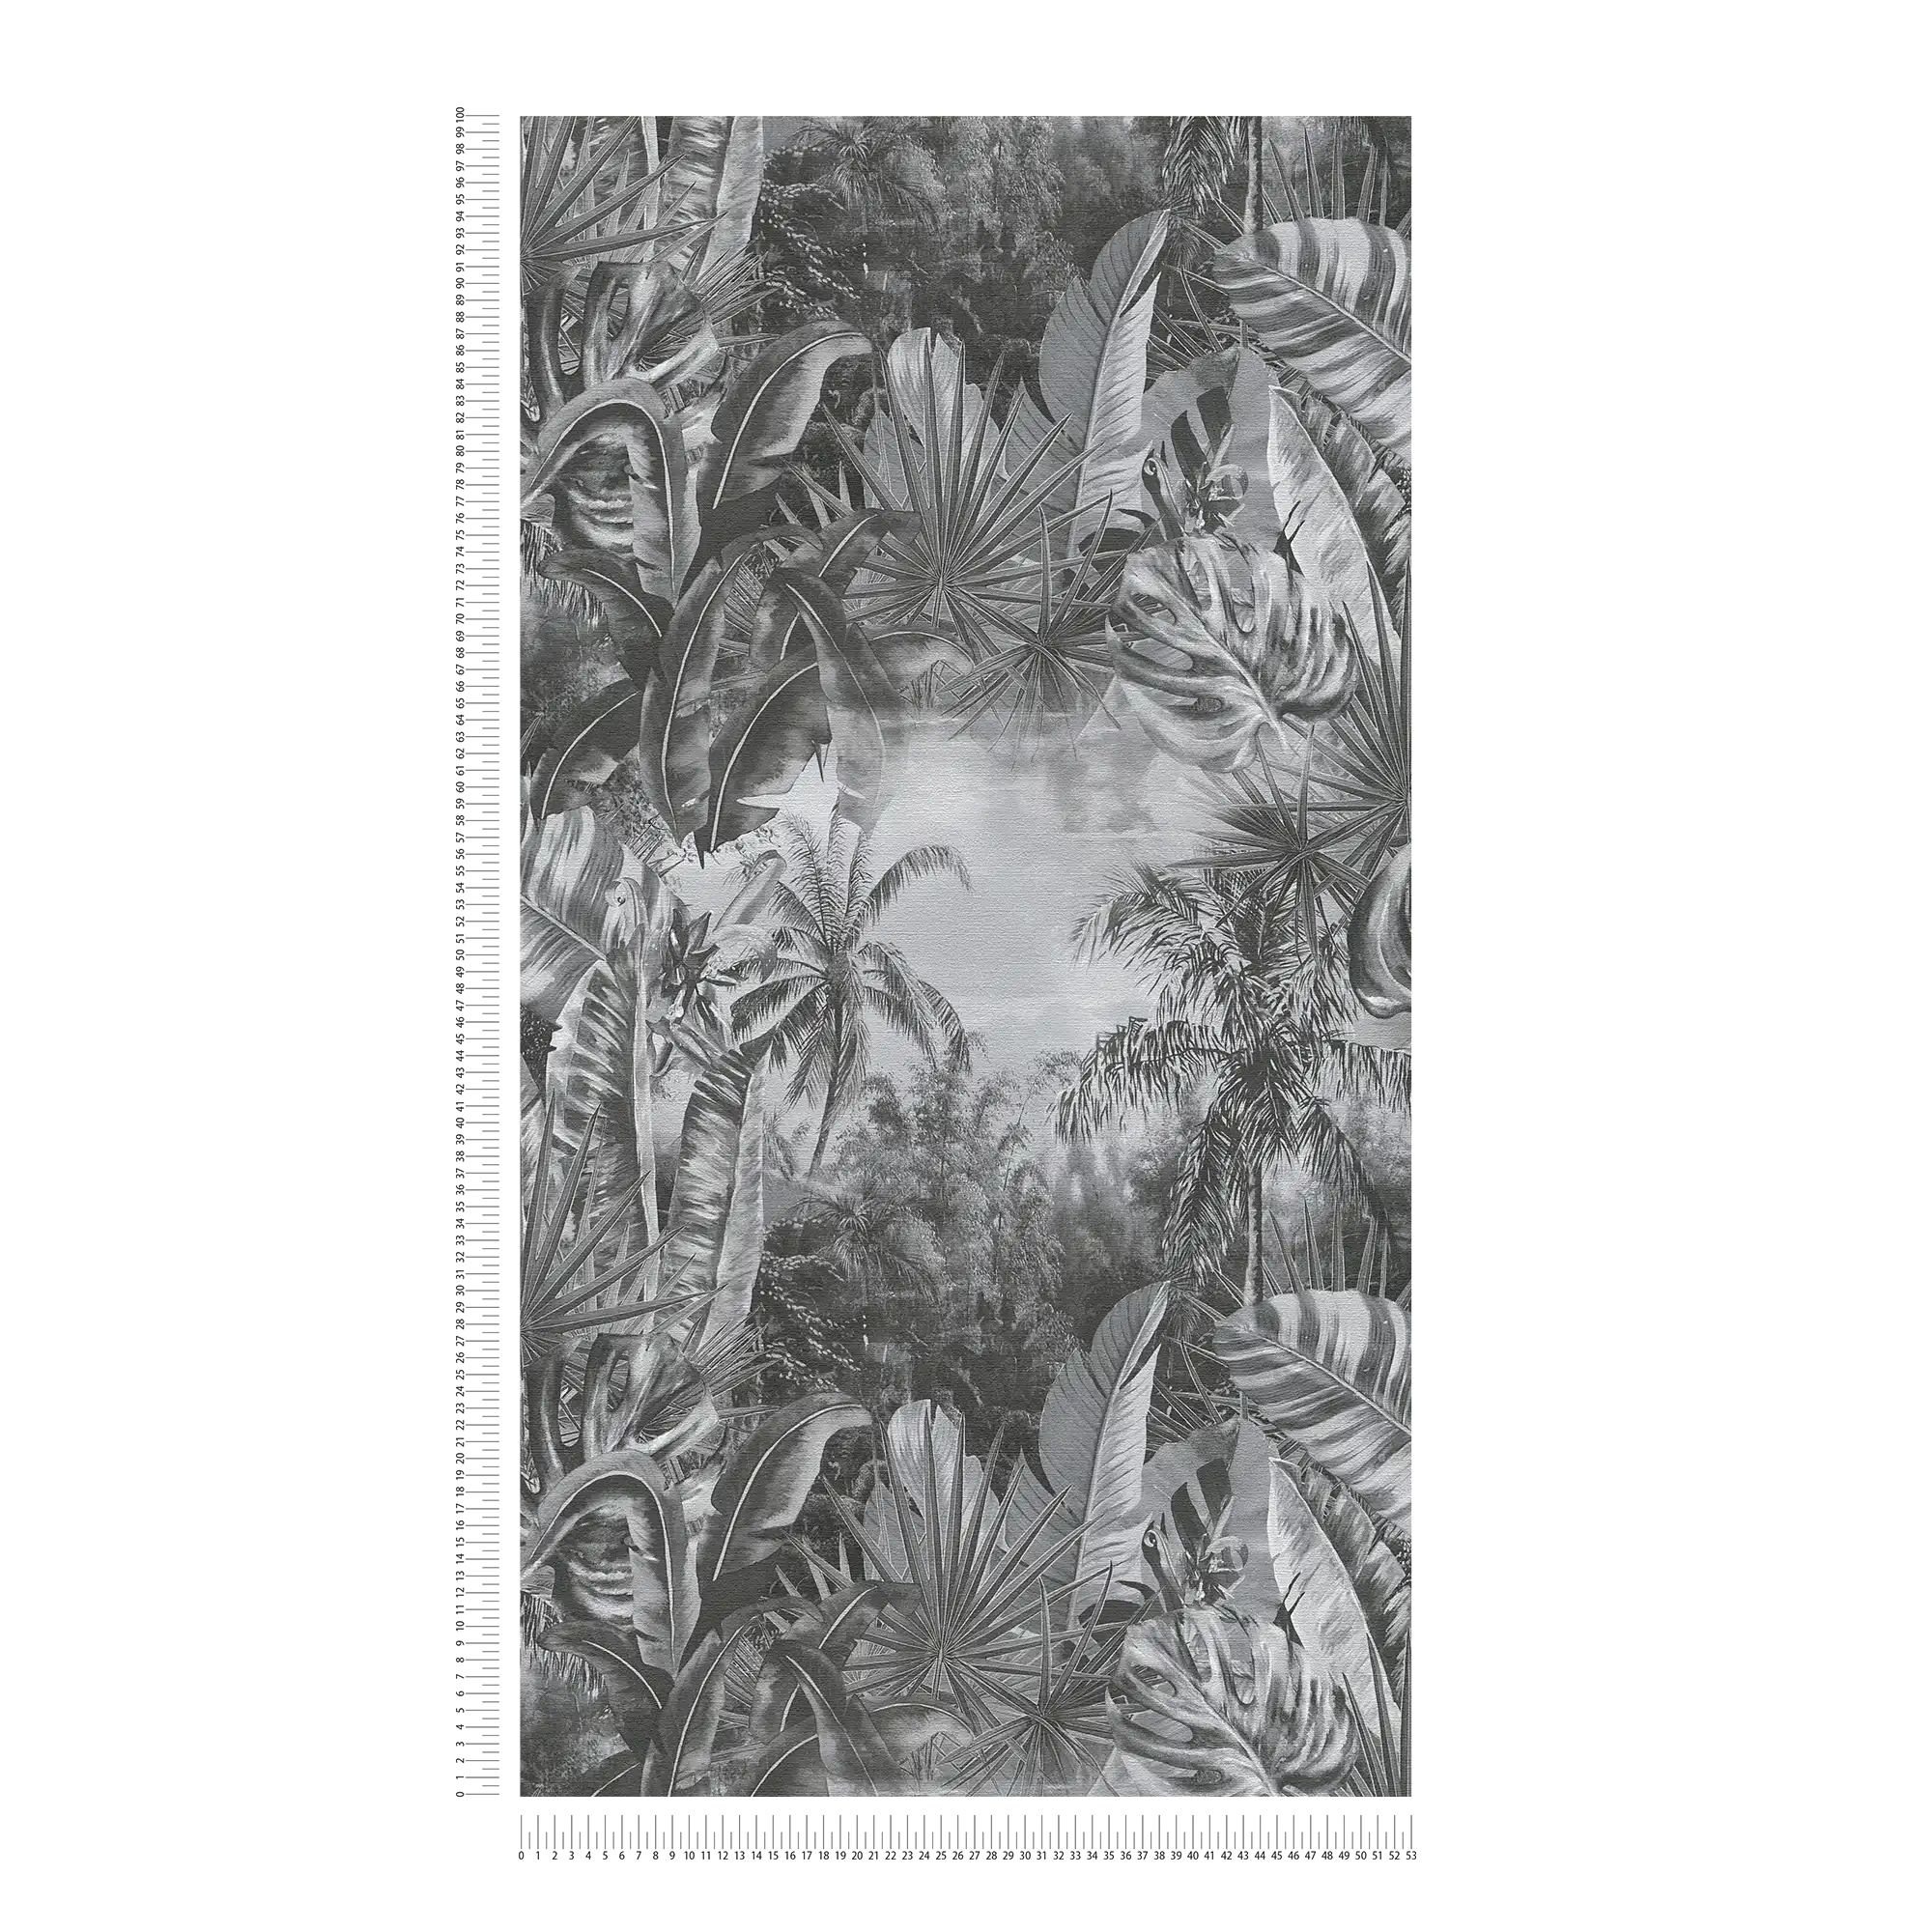             Zwart en wit behang jungle patroon met palmbomen
        